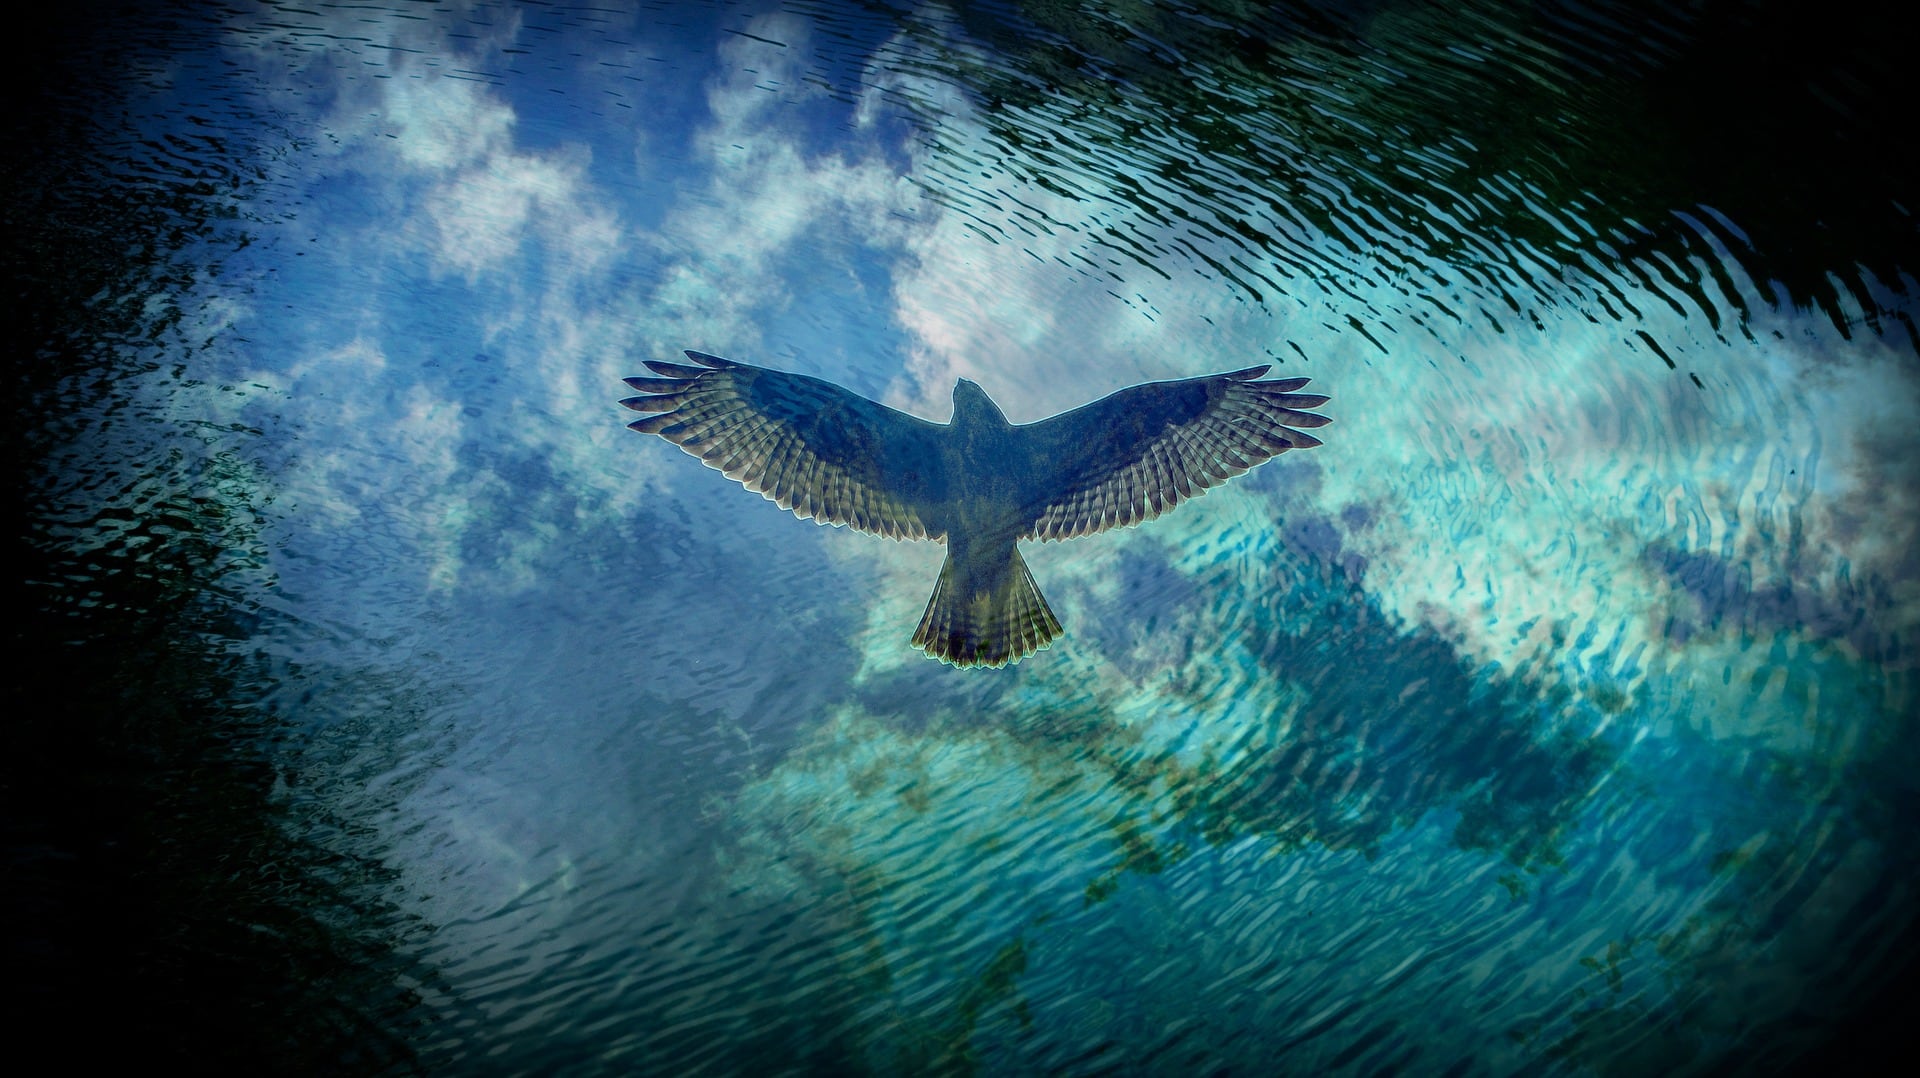 Bird of prey hovers over water - Pixabay